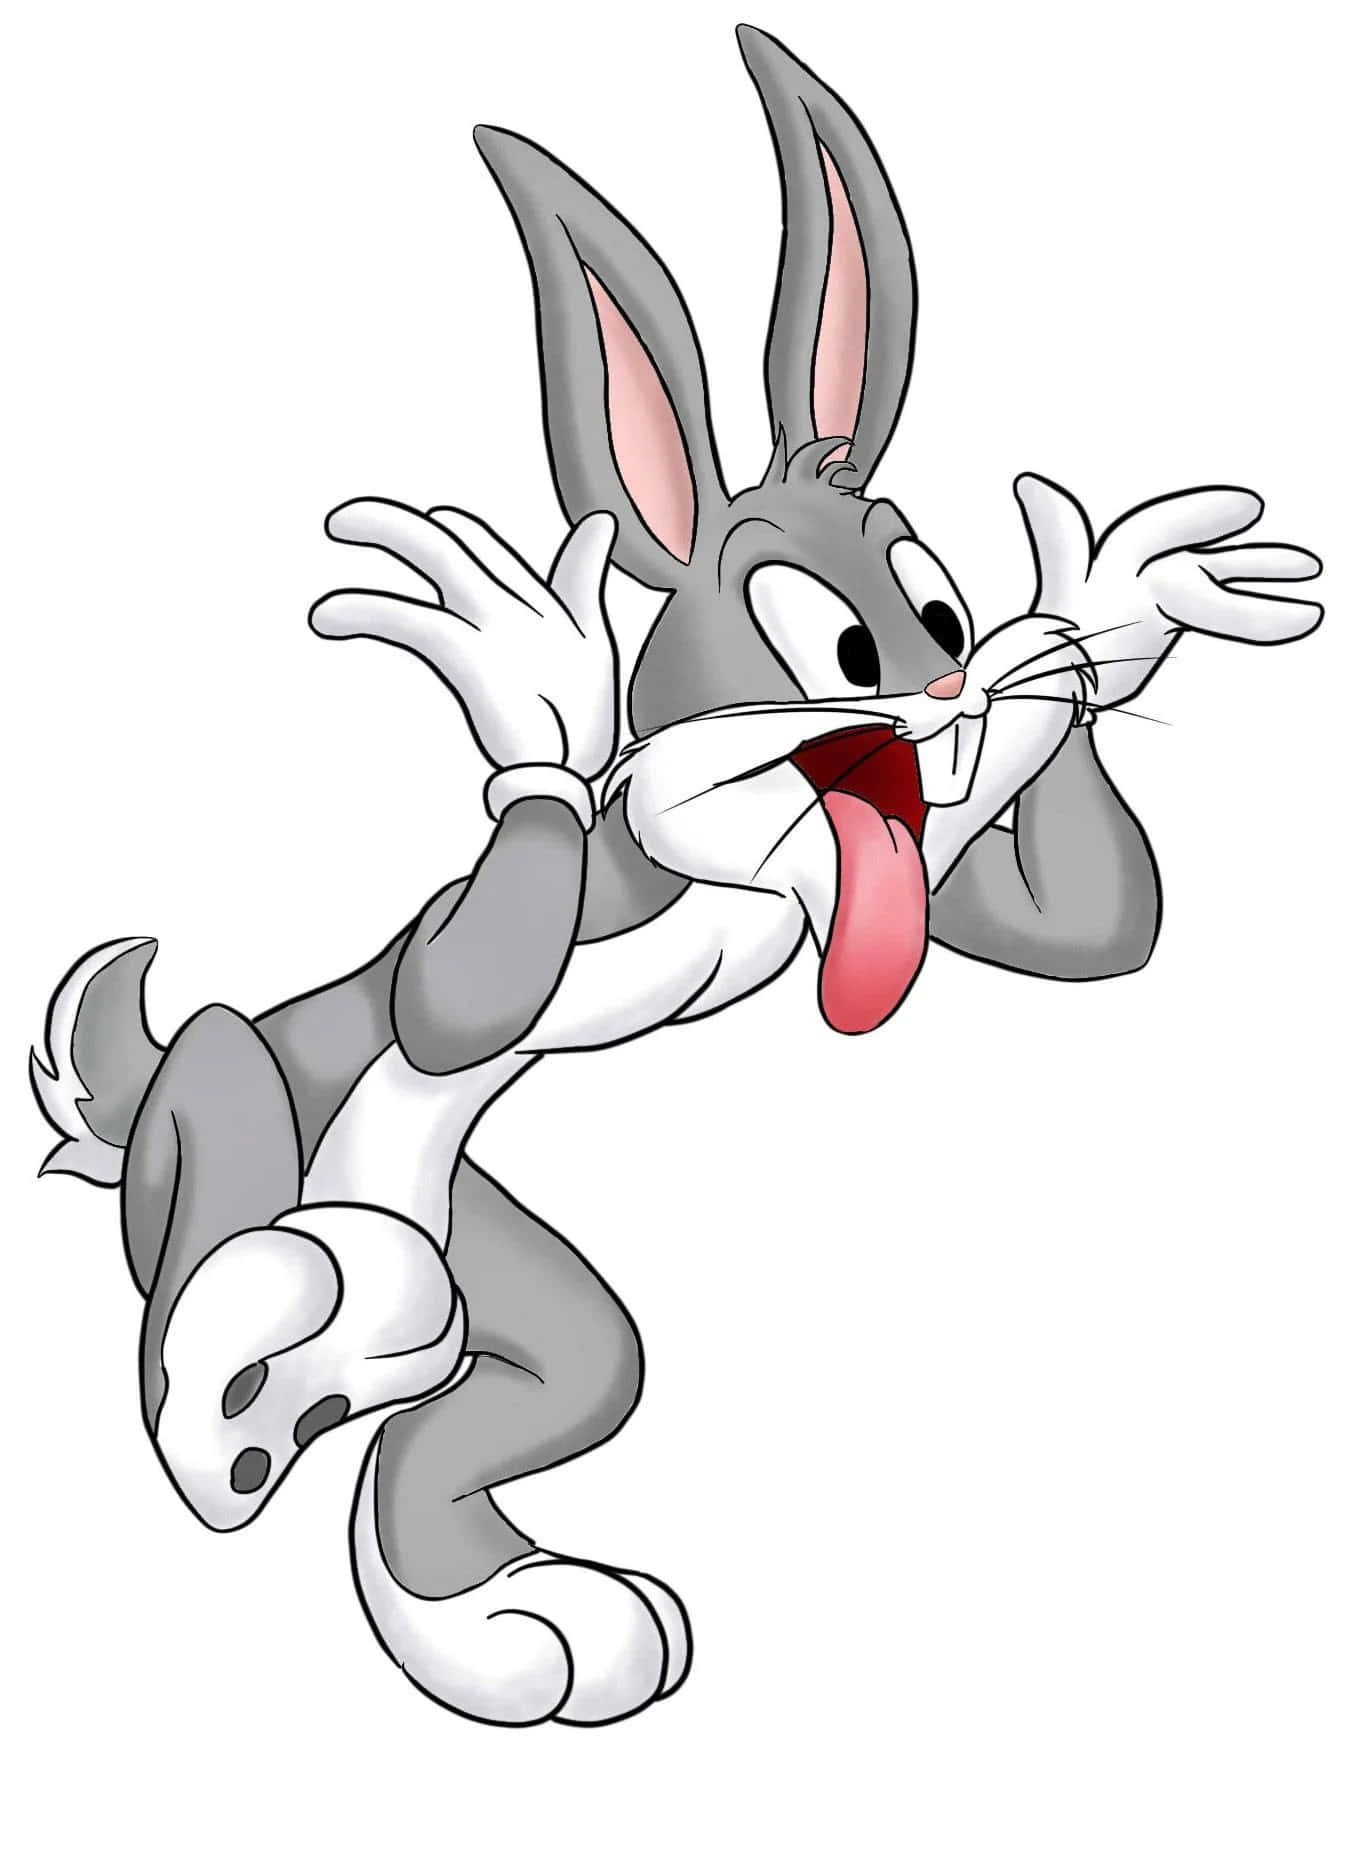 Gördig Redo För De Vilda Äventyren Med Bugs Bunny!